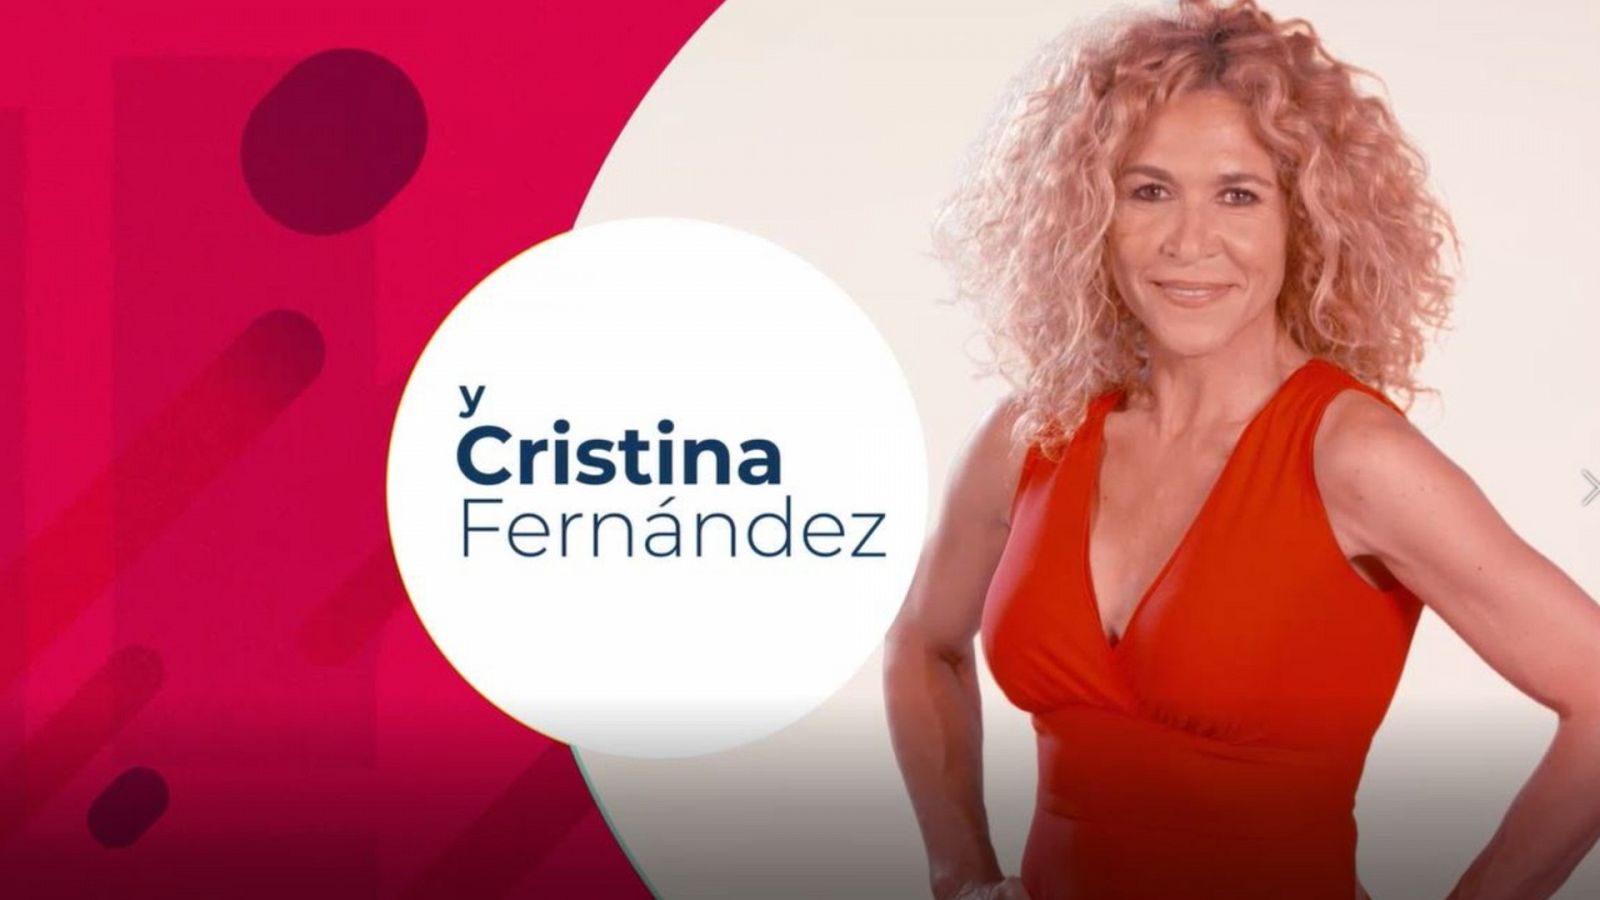 Cristna Fernández estará en "La Hora de La 1"